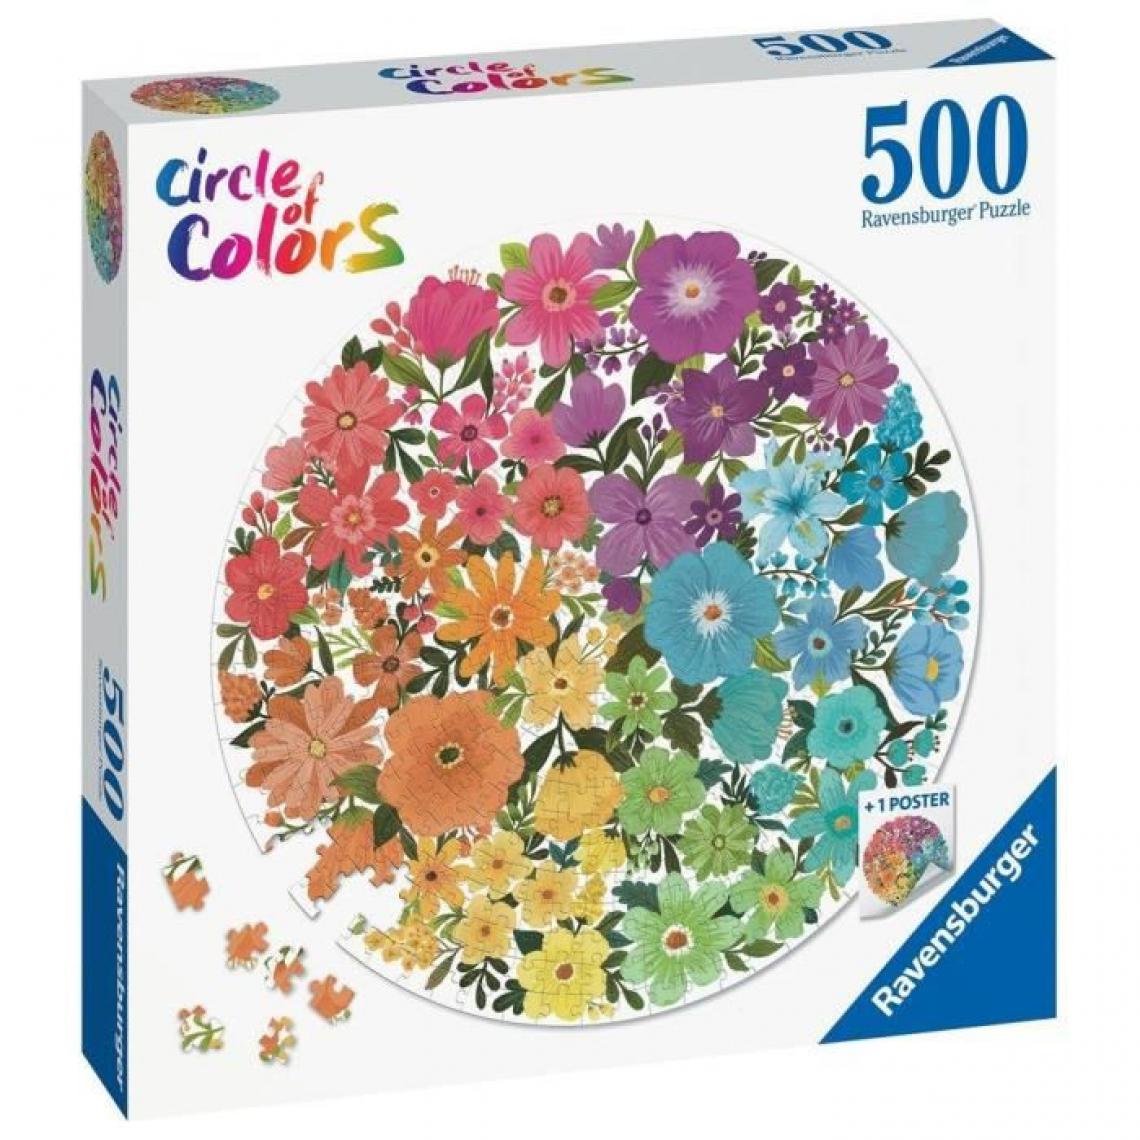 Ravensburger - Ravensburger - Puzzle rond 500 pieces - Fleurs (Circle of Colors) - Animaux